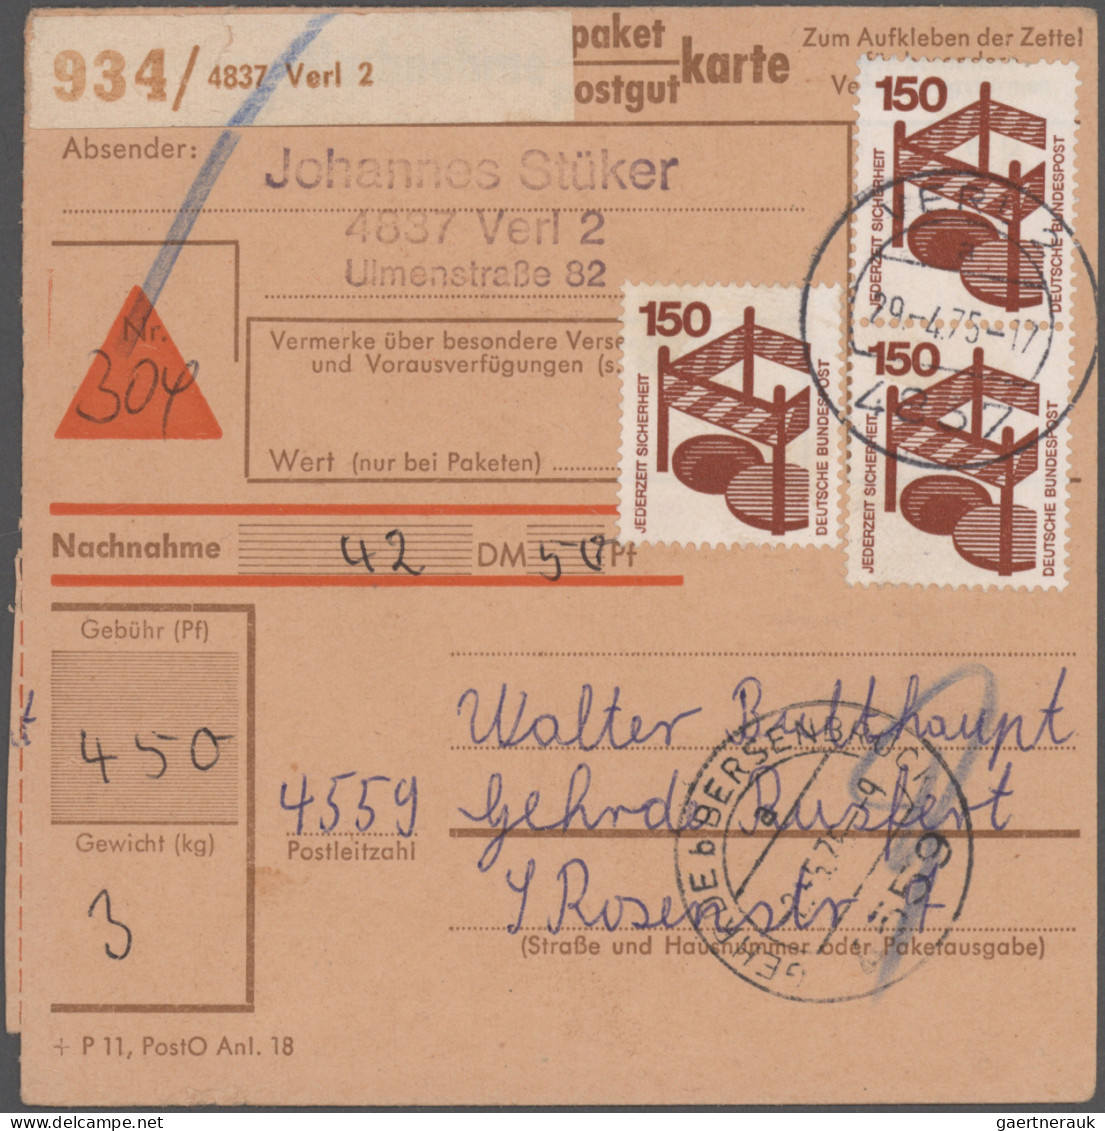 Bundesrepublik Deutschland: 1973/1983, vielseitige Partie von ca. 89 Briefen und